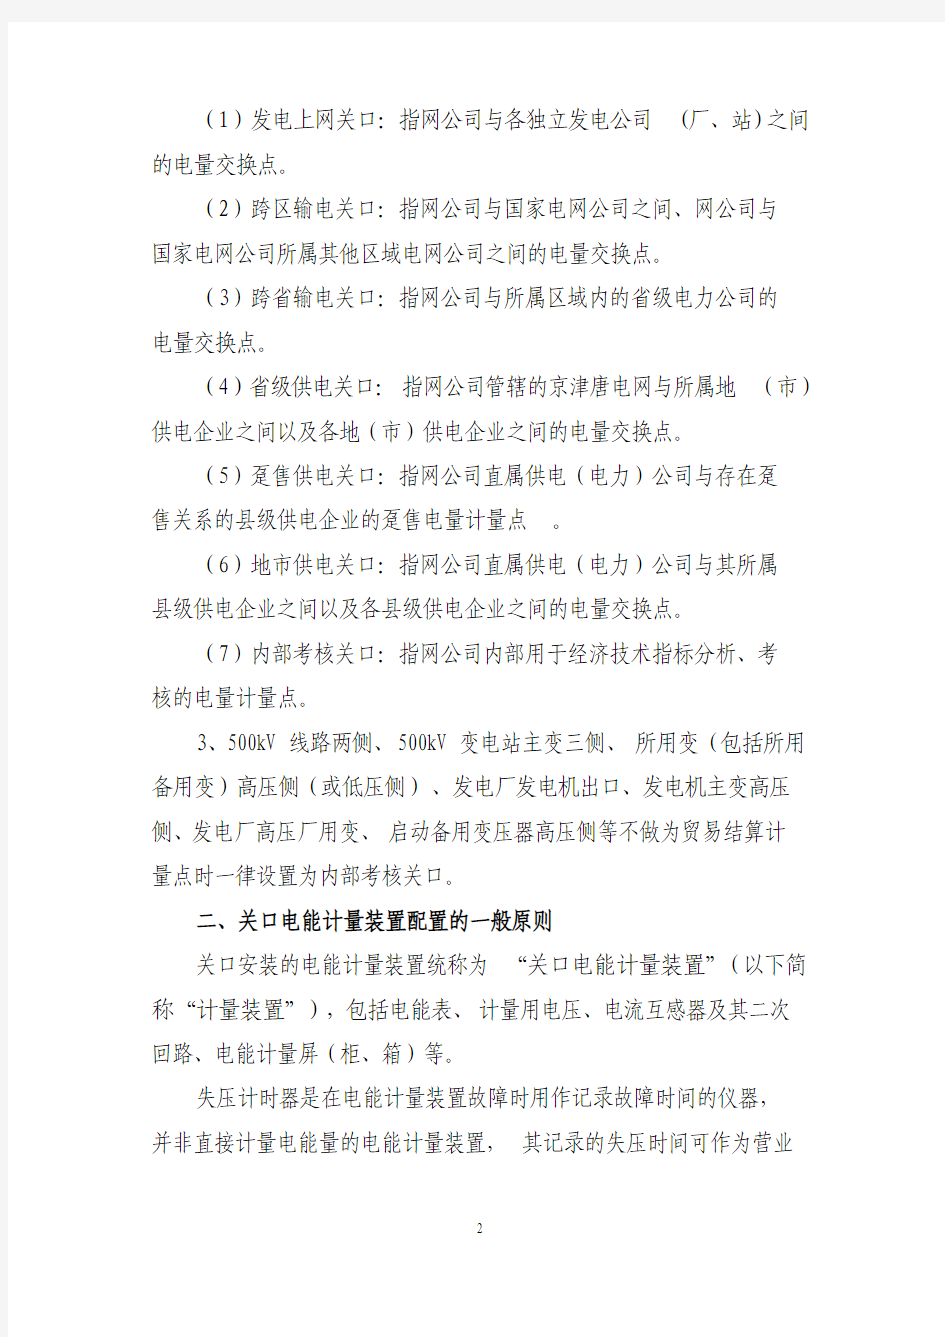 华北电网电能计量装置配置原则(正式版)